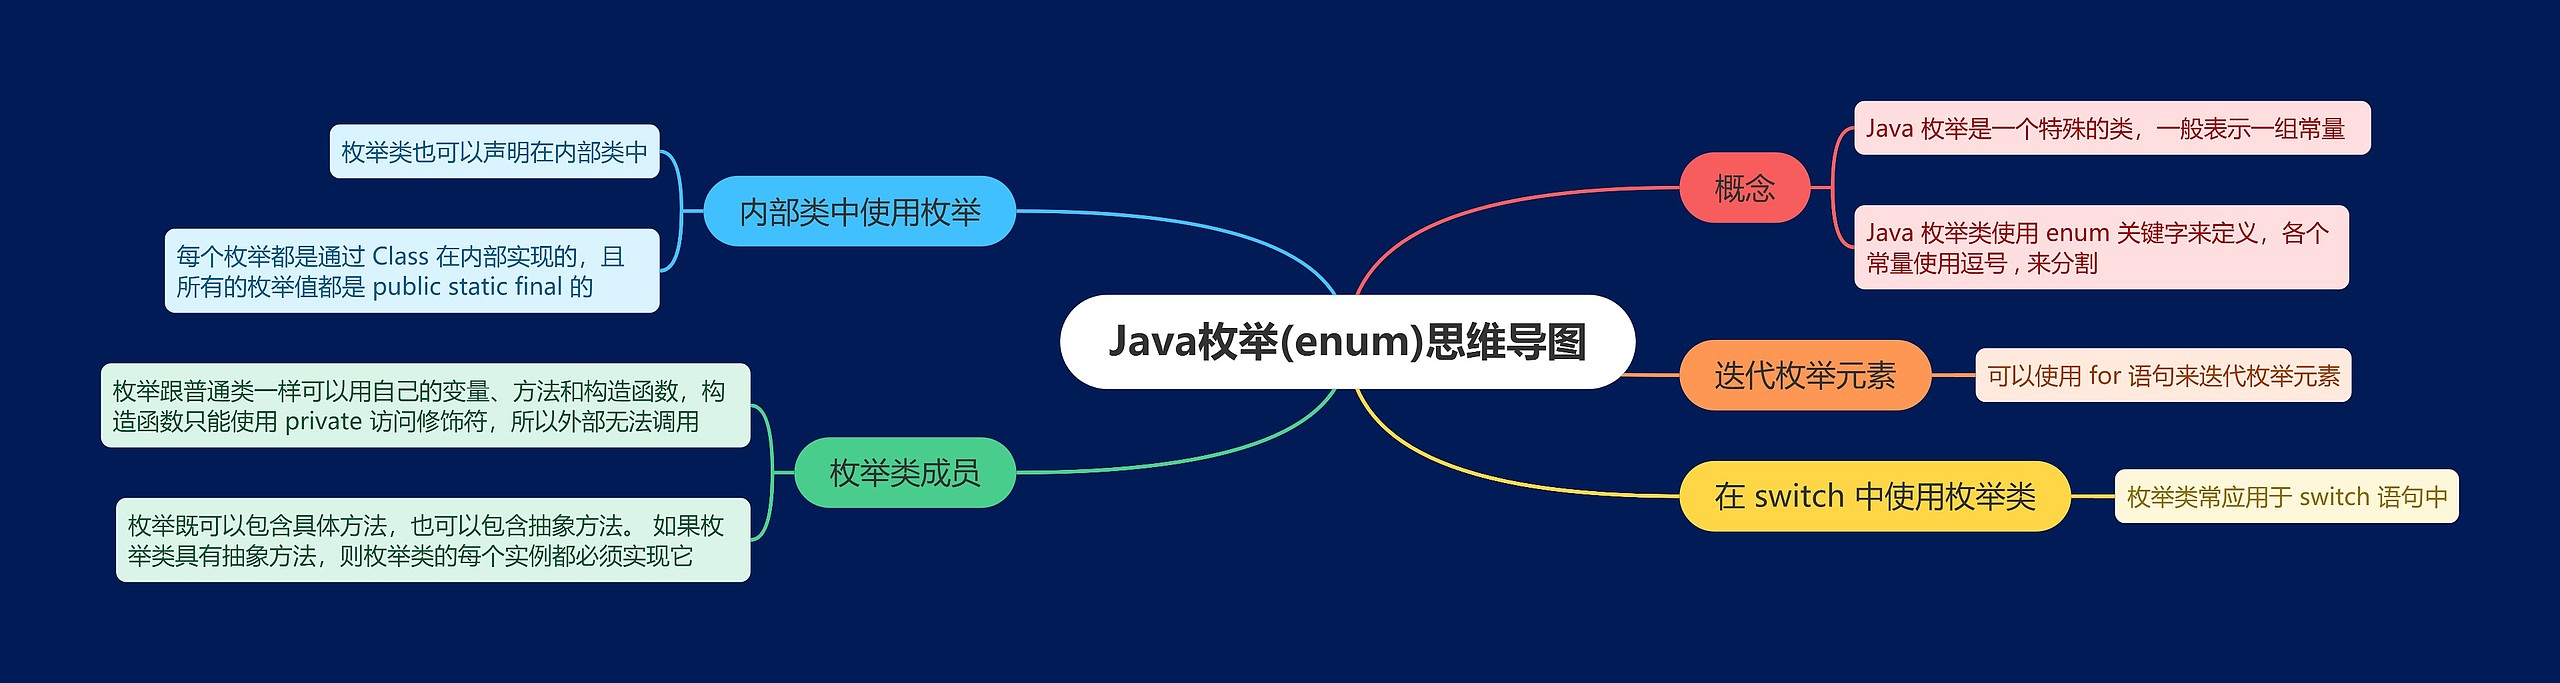 Java枚举(enum)思维导图